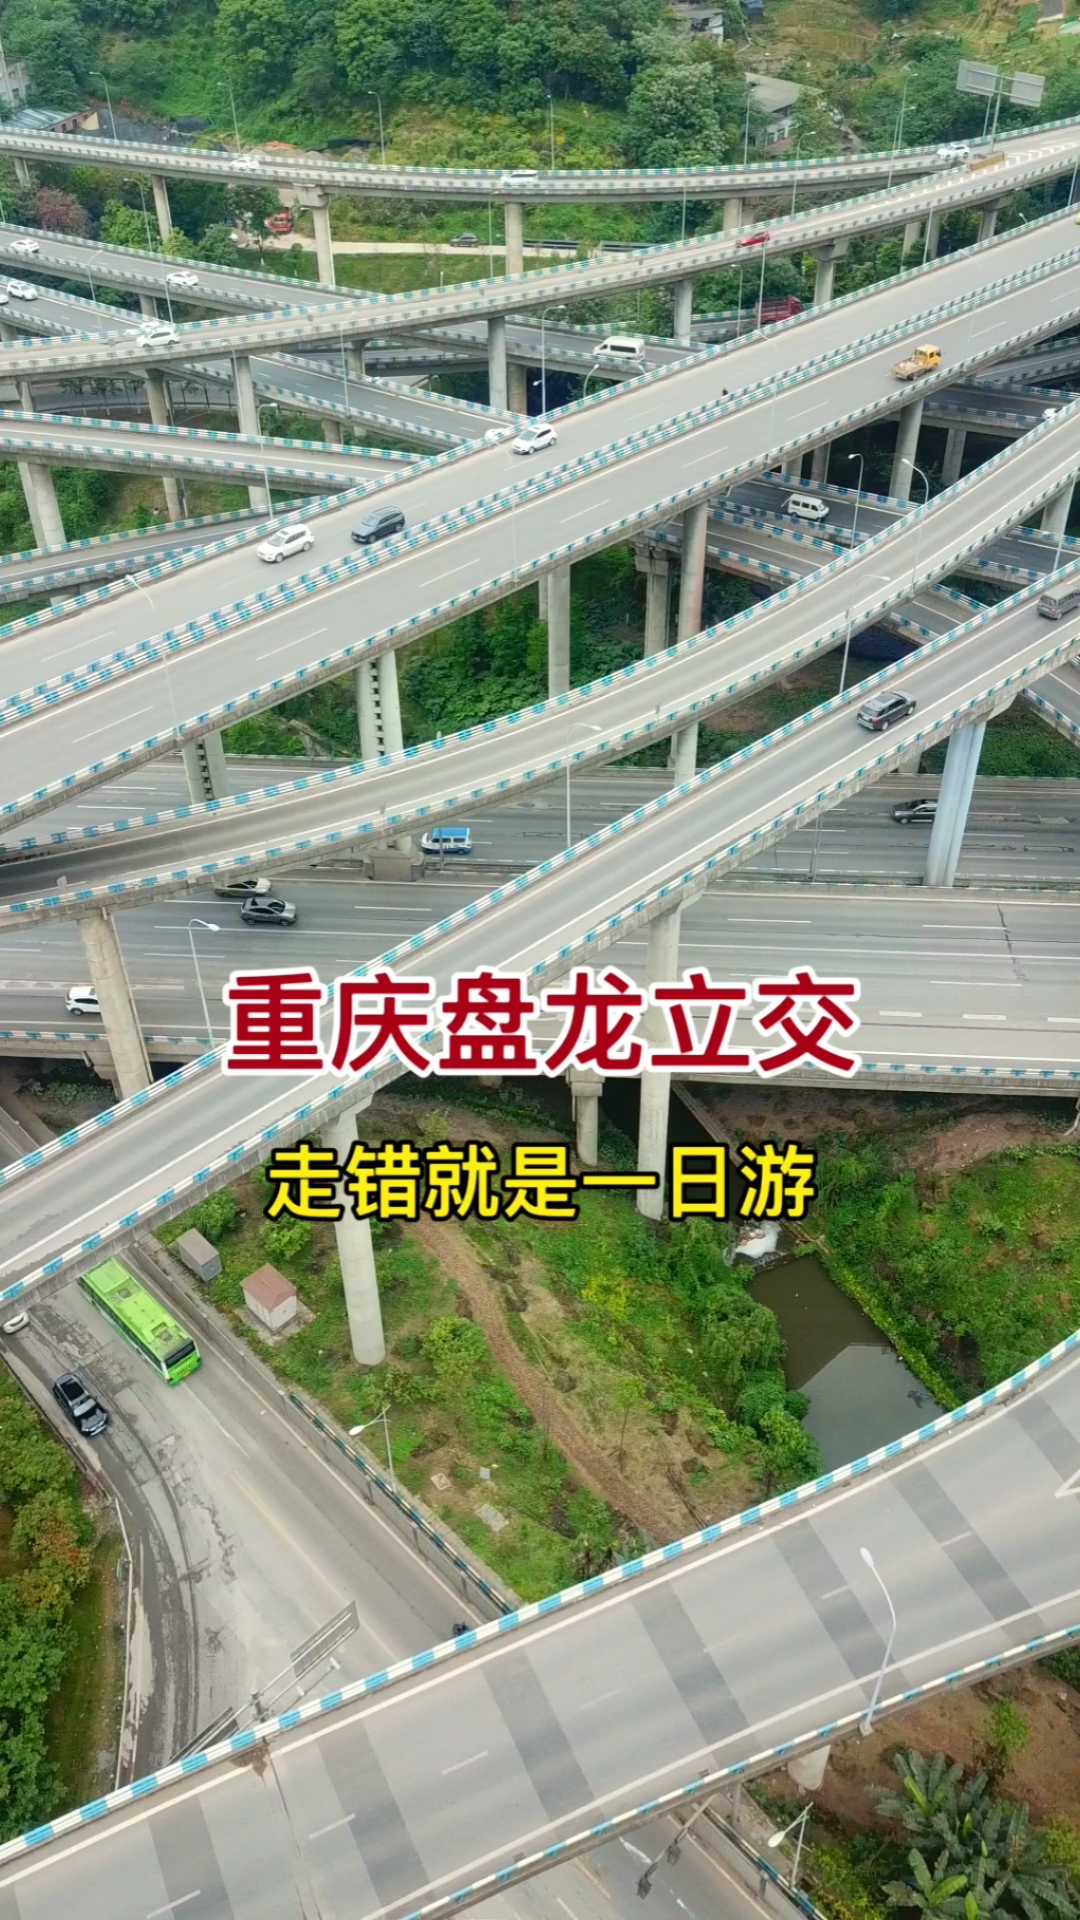 沿着高速看中国中国最复杂的立交桥重庆盘龙立交连导航都会懵走错就是